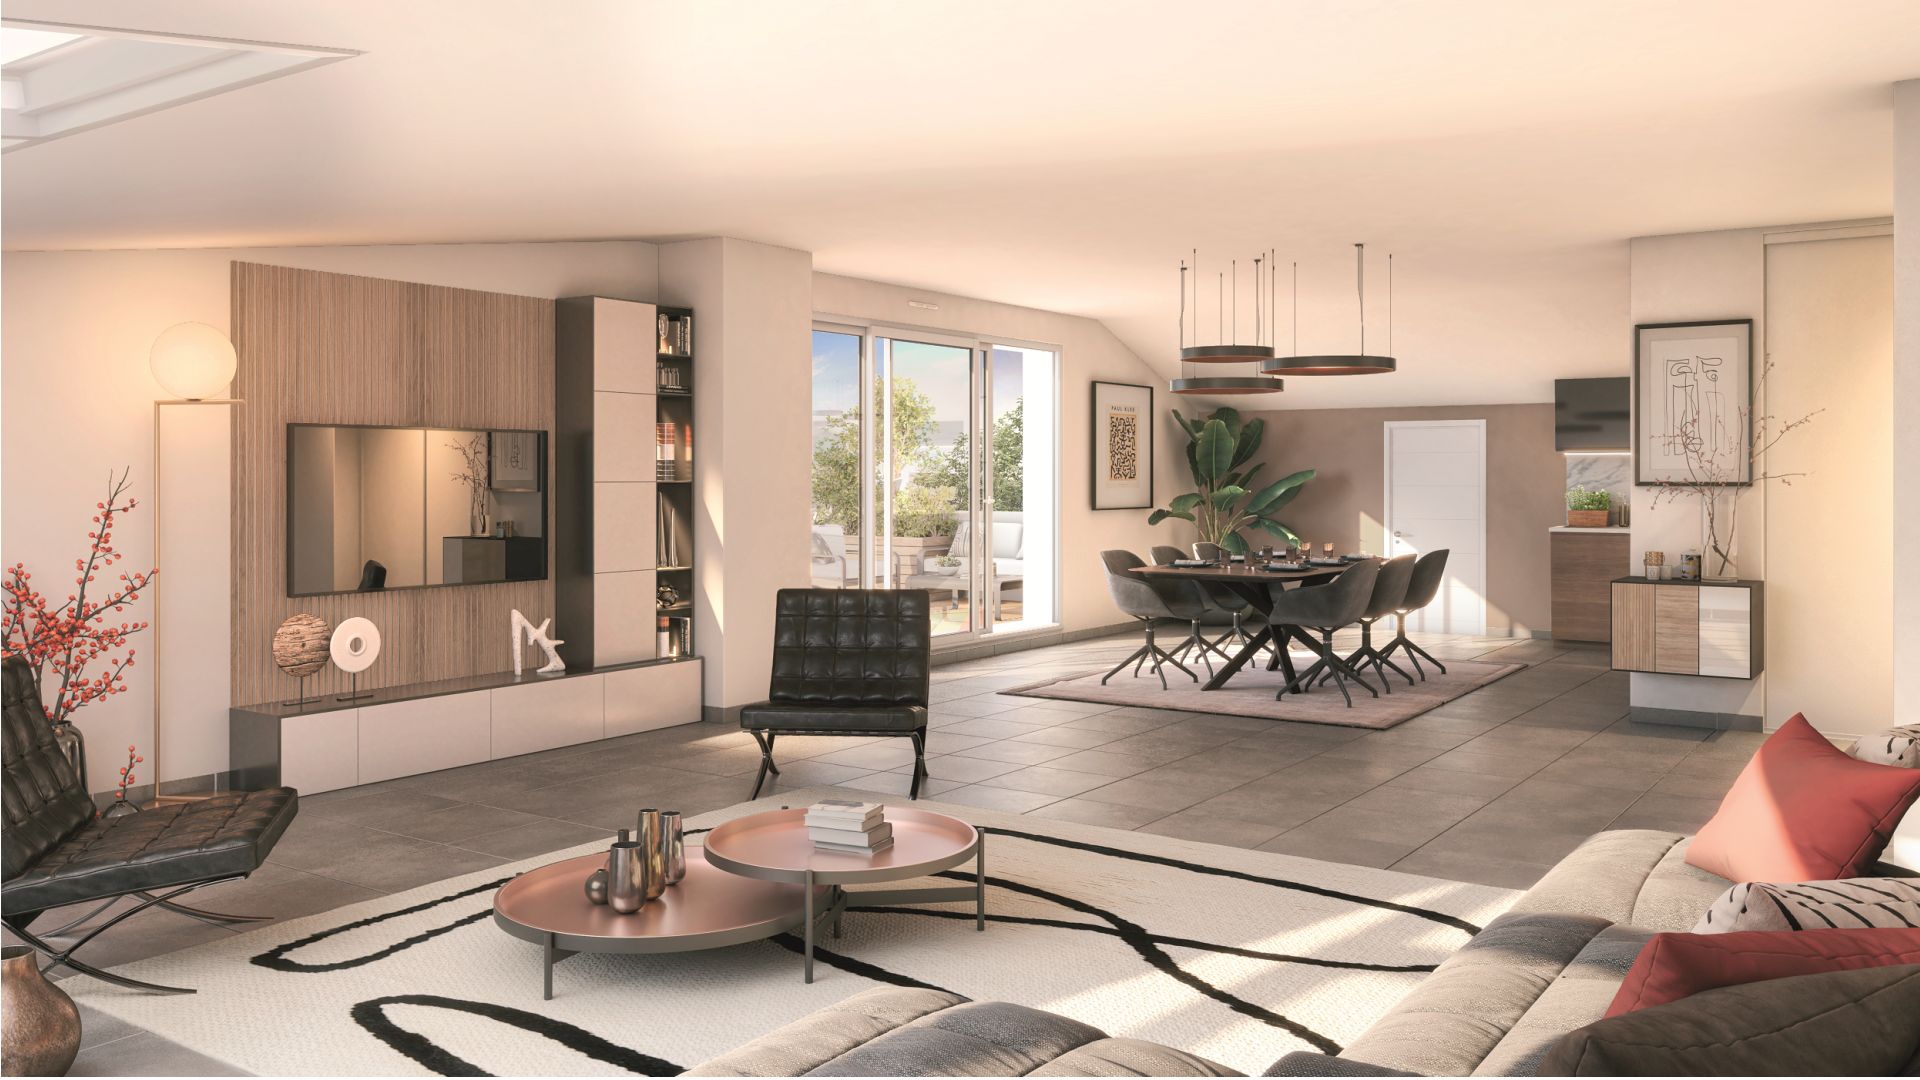 Greencity immobilier - achat appartements neufs du T2 au T5 - Résidence Le Solea - 31520 Ramonville-Saint-Agne - vue intérieure